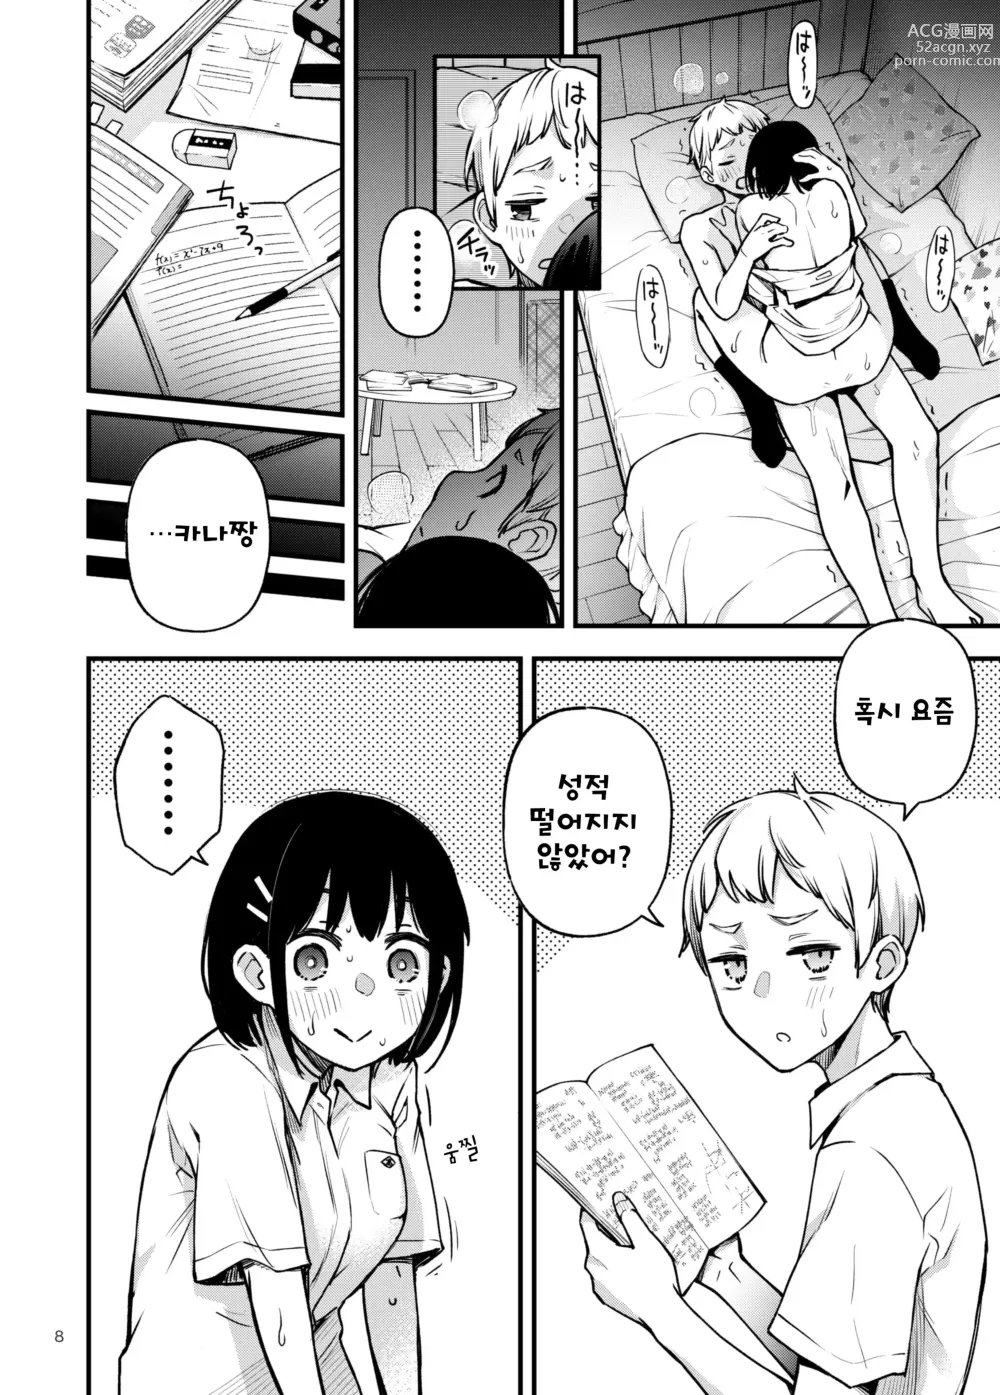 Page 8 of doujinshi 처녀가 동정과의 첫 체험에서 눈을 뜨는 이야기 2